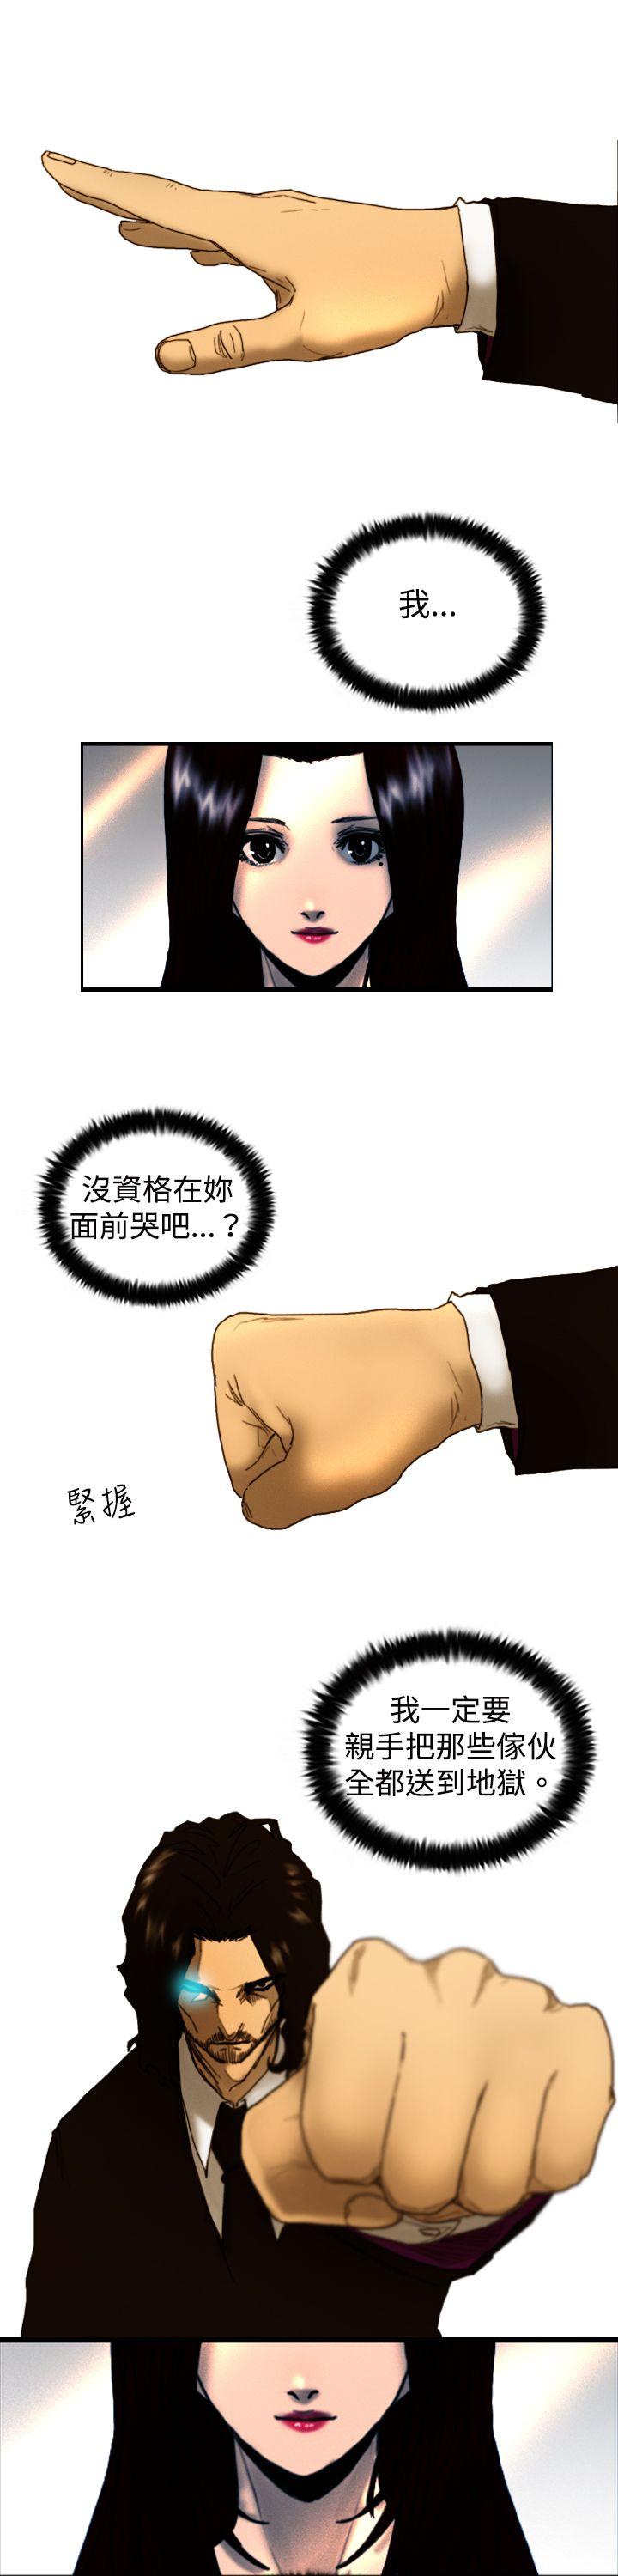 韩国污漫画 覺醒(完結) 第8话爸爸的谜语 29